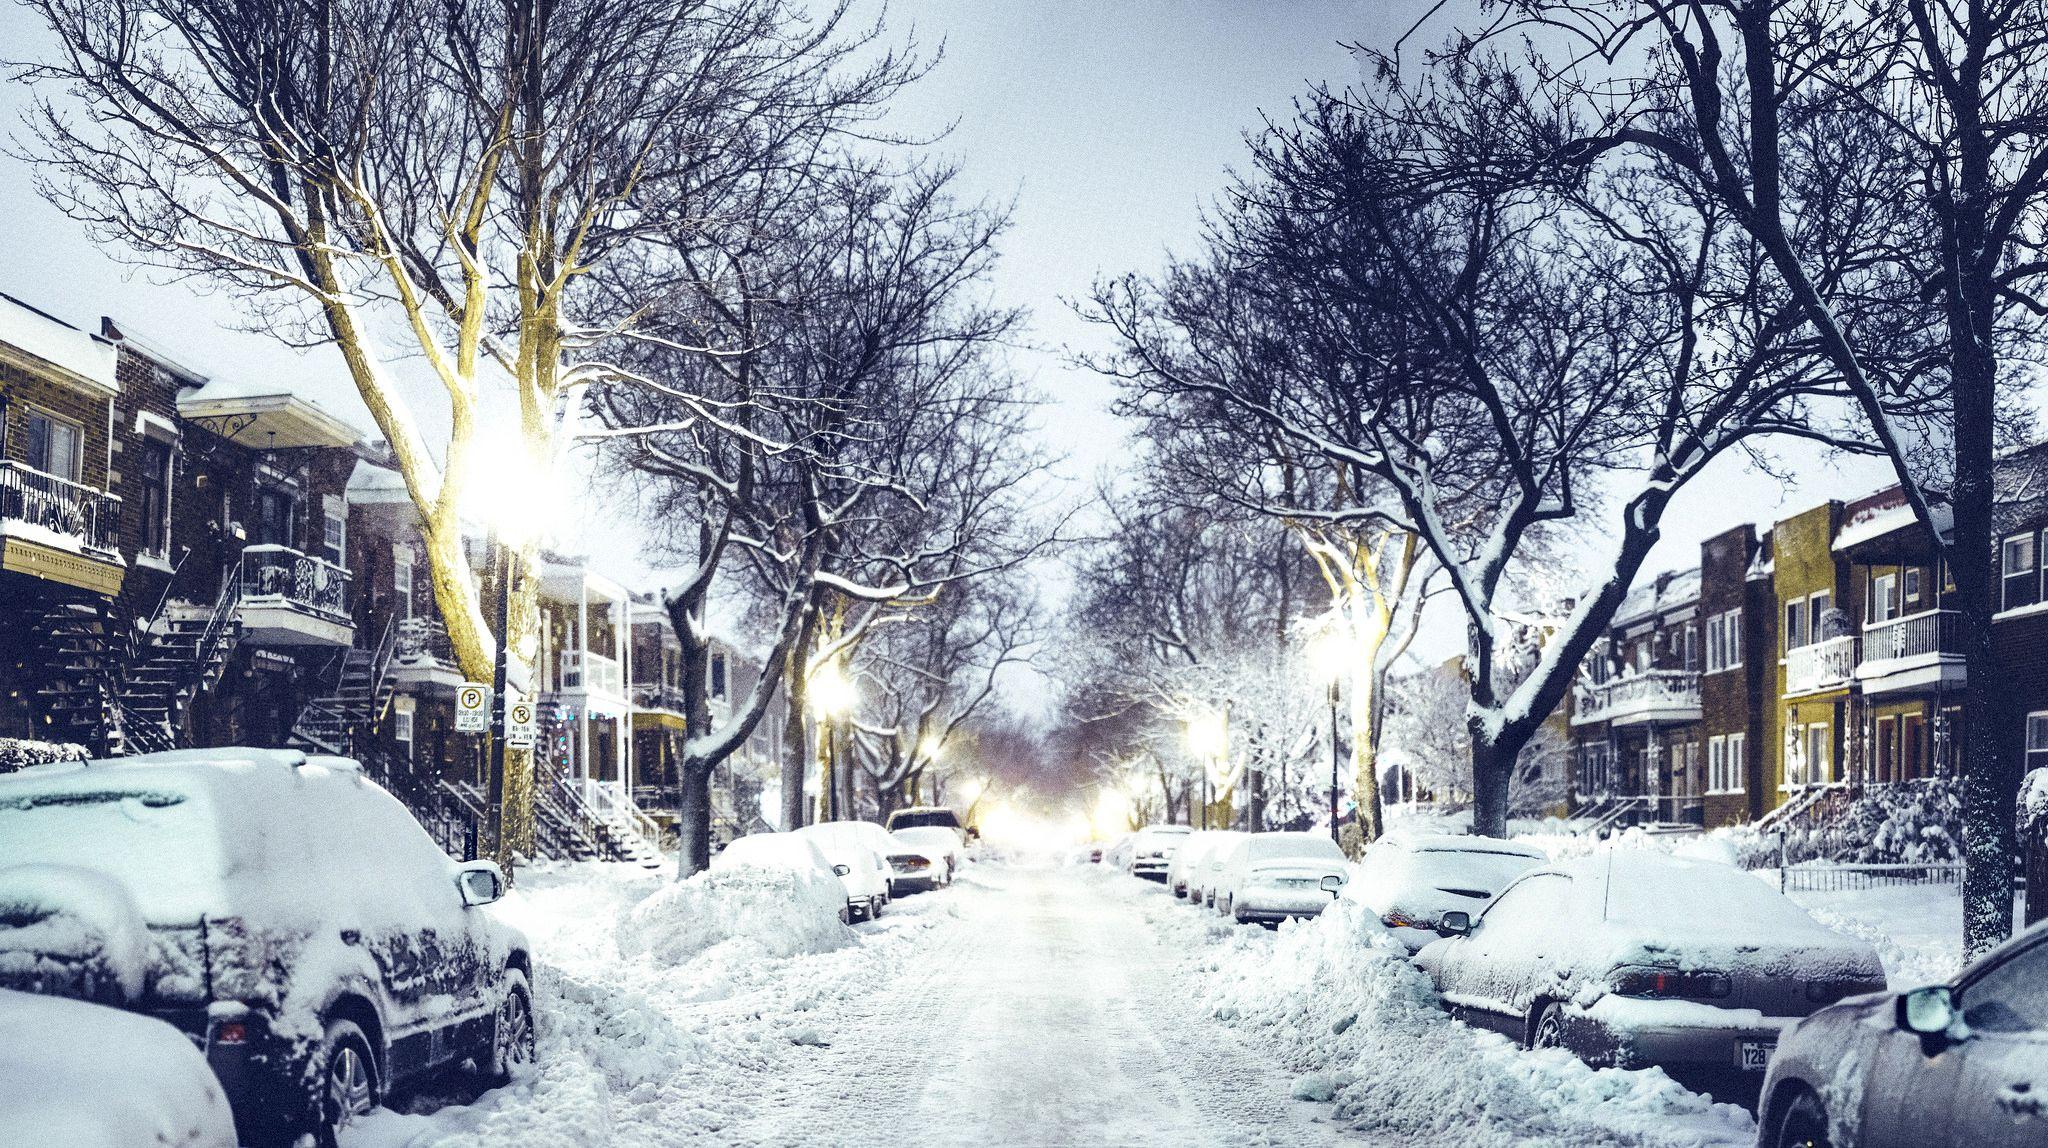 Quebec City Winter Night. Winter wallpaper, City